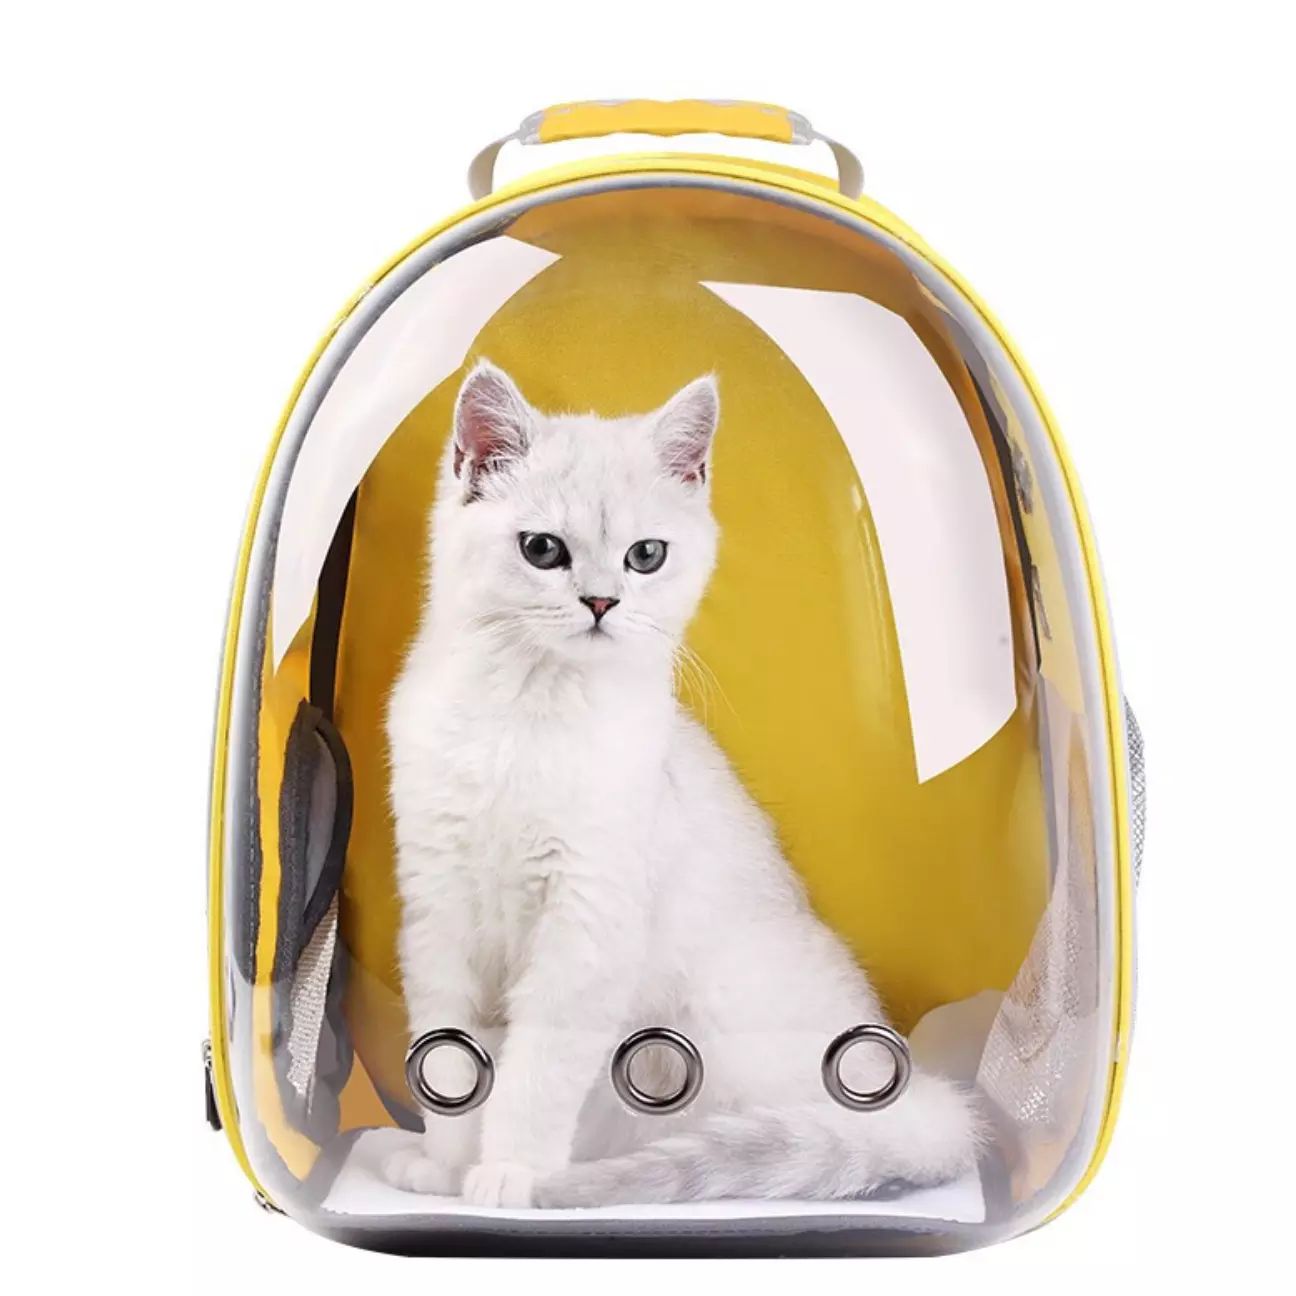 Купить рюкзак переноску для кошек. Переноска с иллюминатором для кошек рюкзак Озон. Рюкзак "кошка". Рюкзак для переноски кошек. Рюкзак переноска для кота.